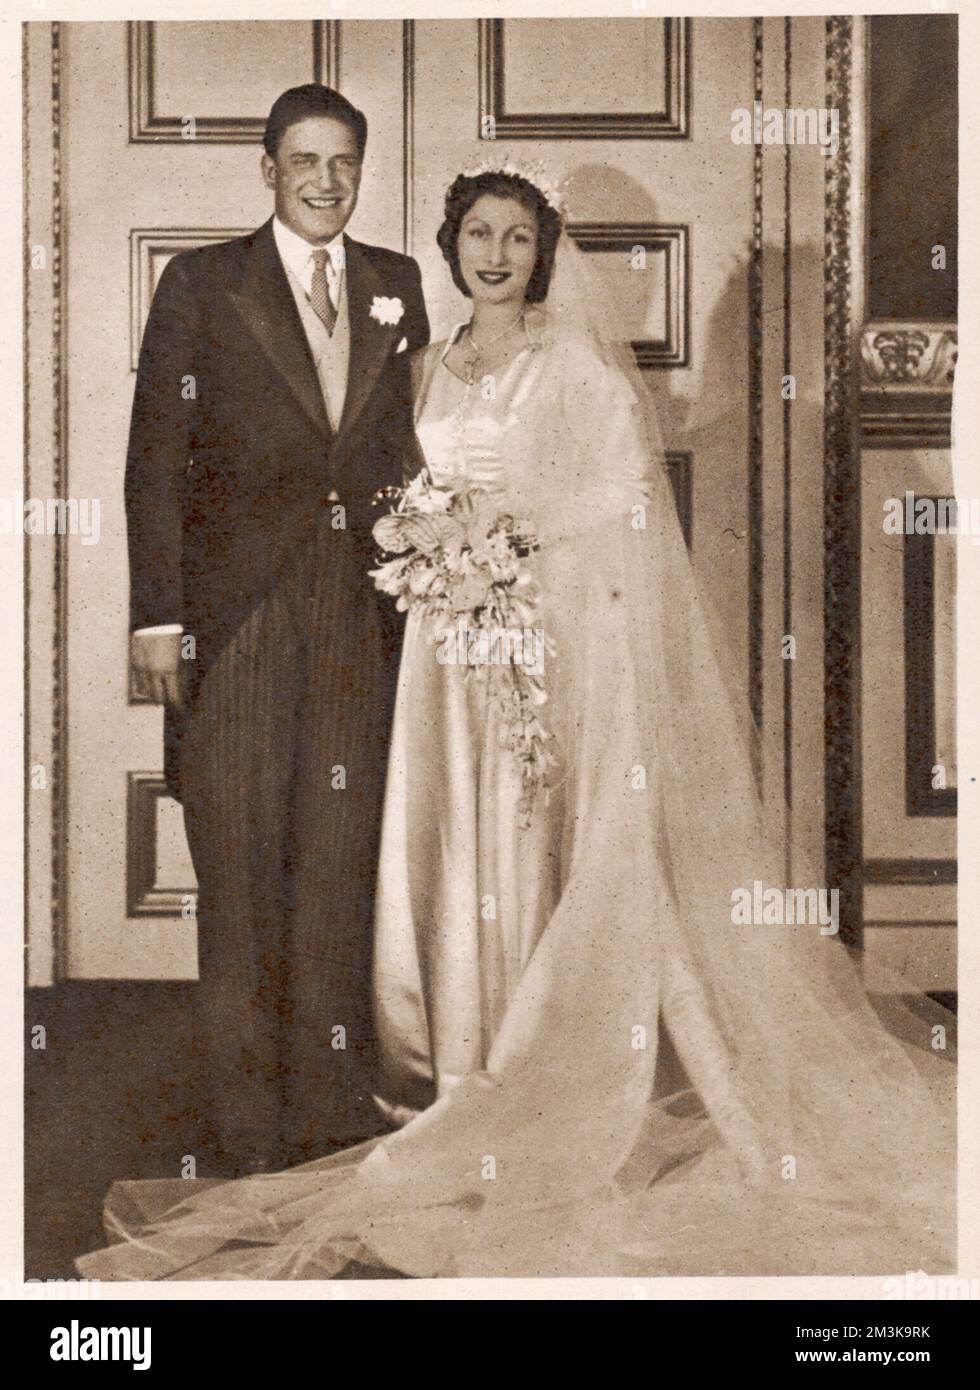 GERALD DAVID LASCELLES sul suo matrimonio con Angela Dowding a St. Margaret's Church, Westminster. Lascelles era figlio minore della principessa reale. Data: 1924 - Foto Stock